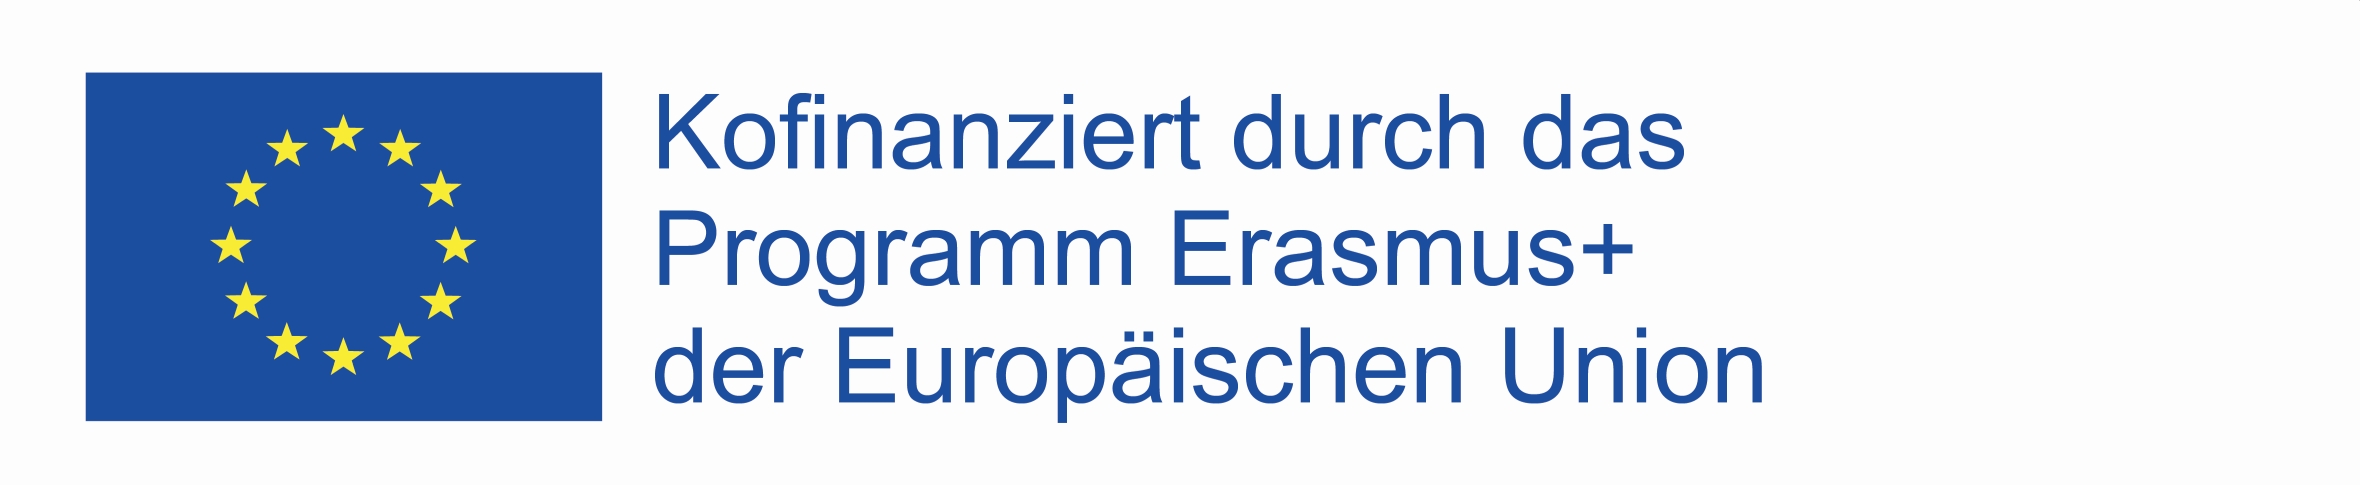 Logo Erasmus plus deutsch